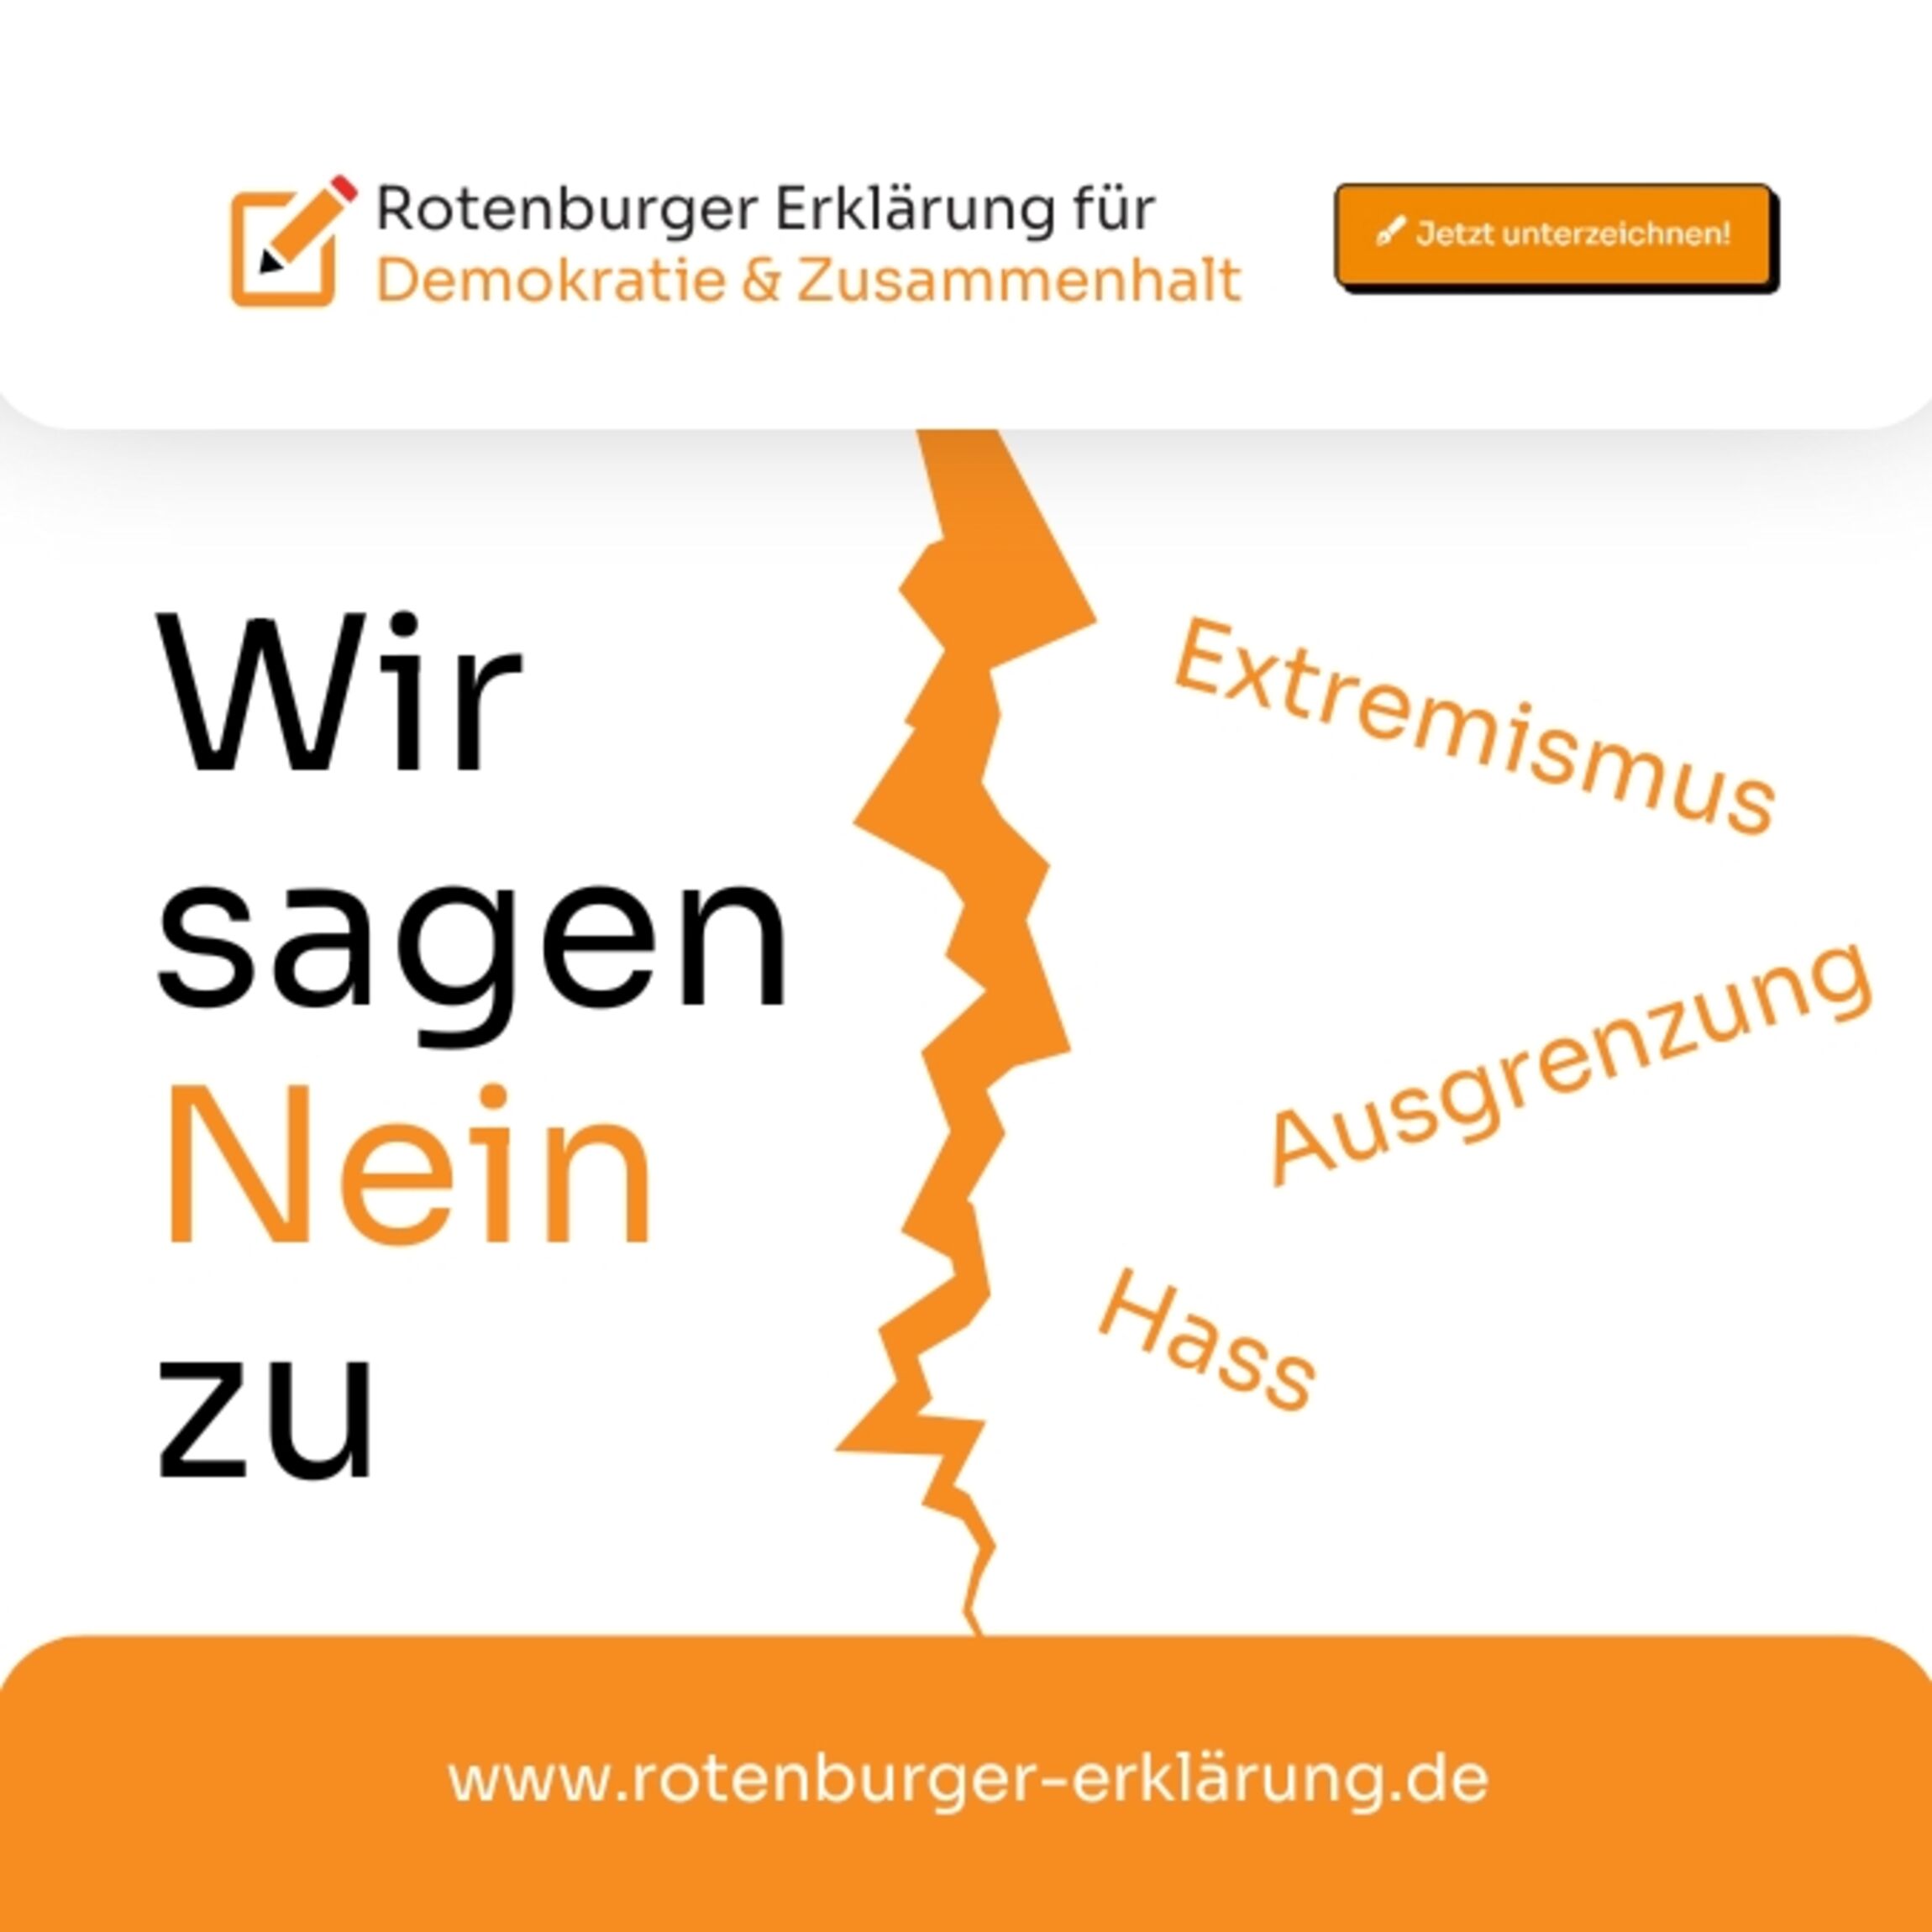 Rotenburger Erklärung für Demokratie und Zusammenhalt